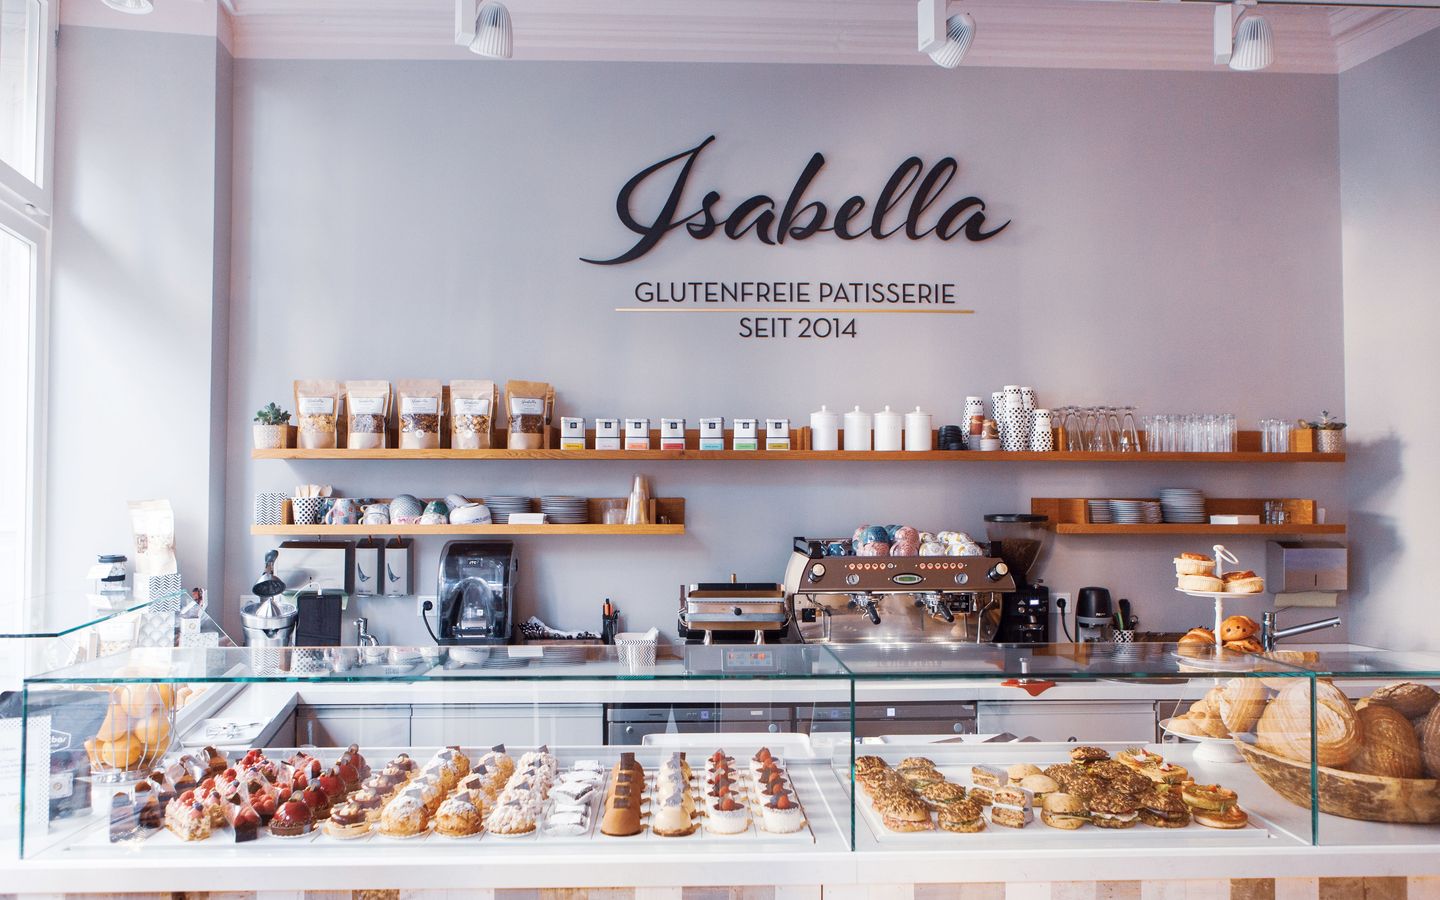 Pâtisserie sans gluten Isabella